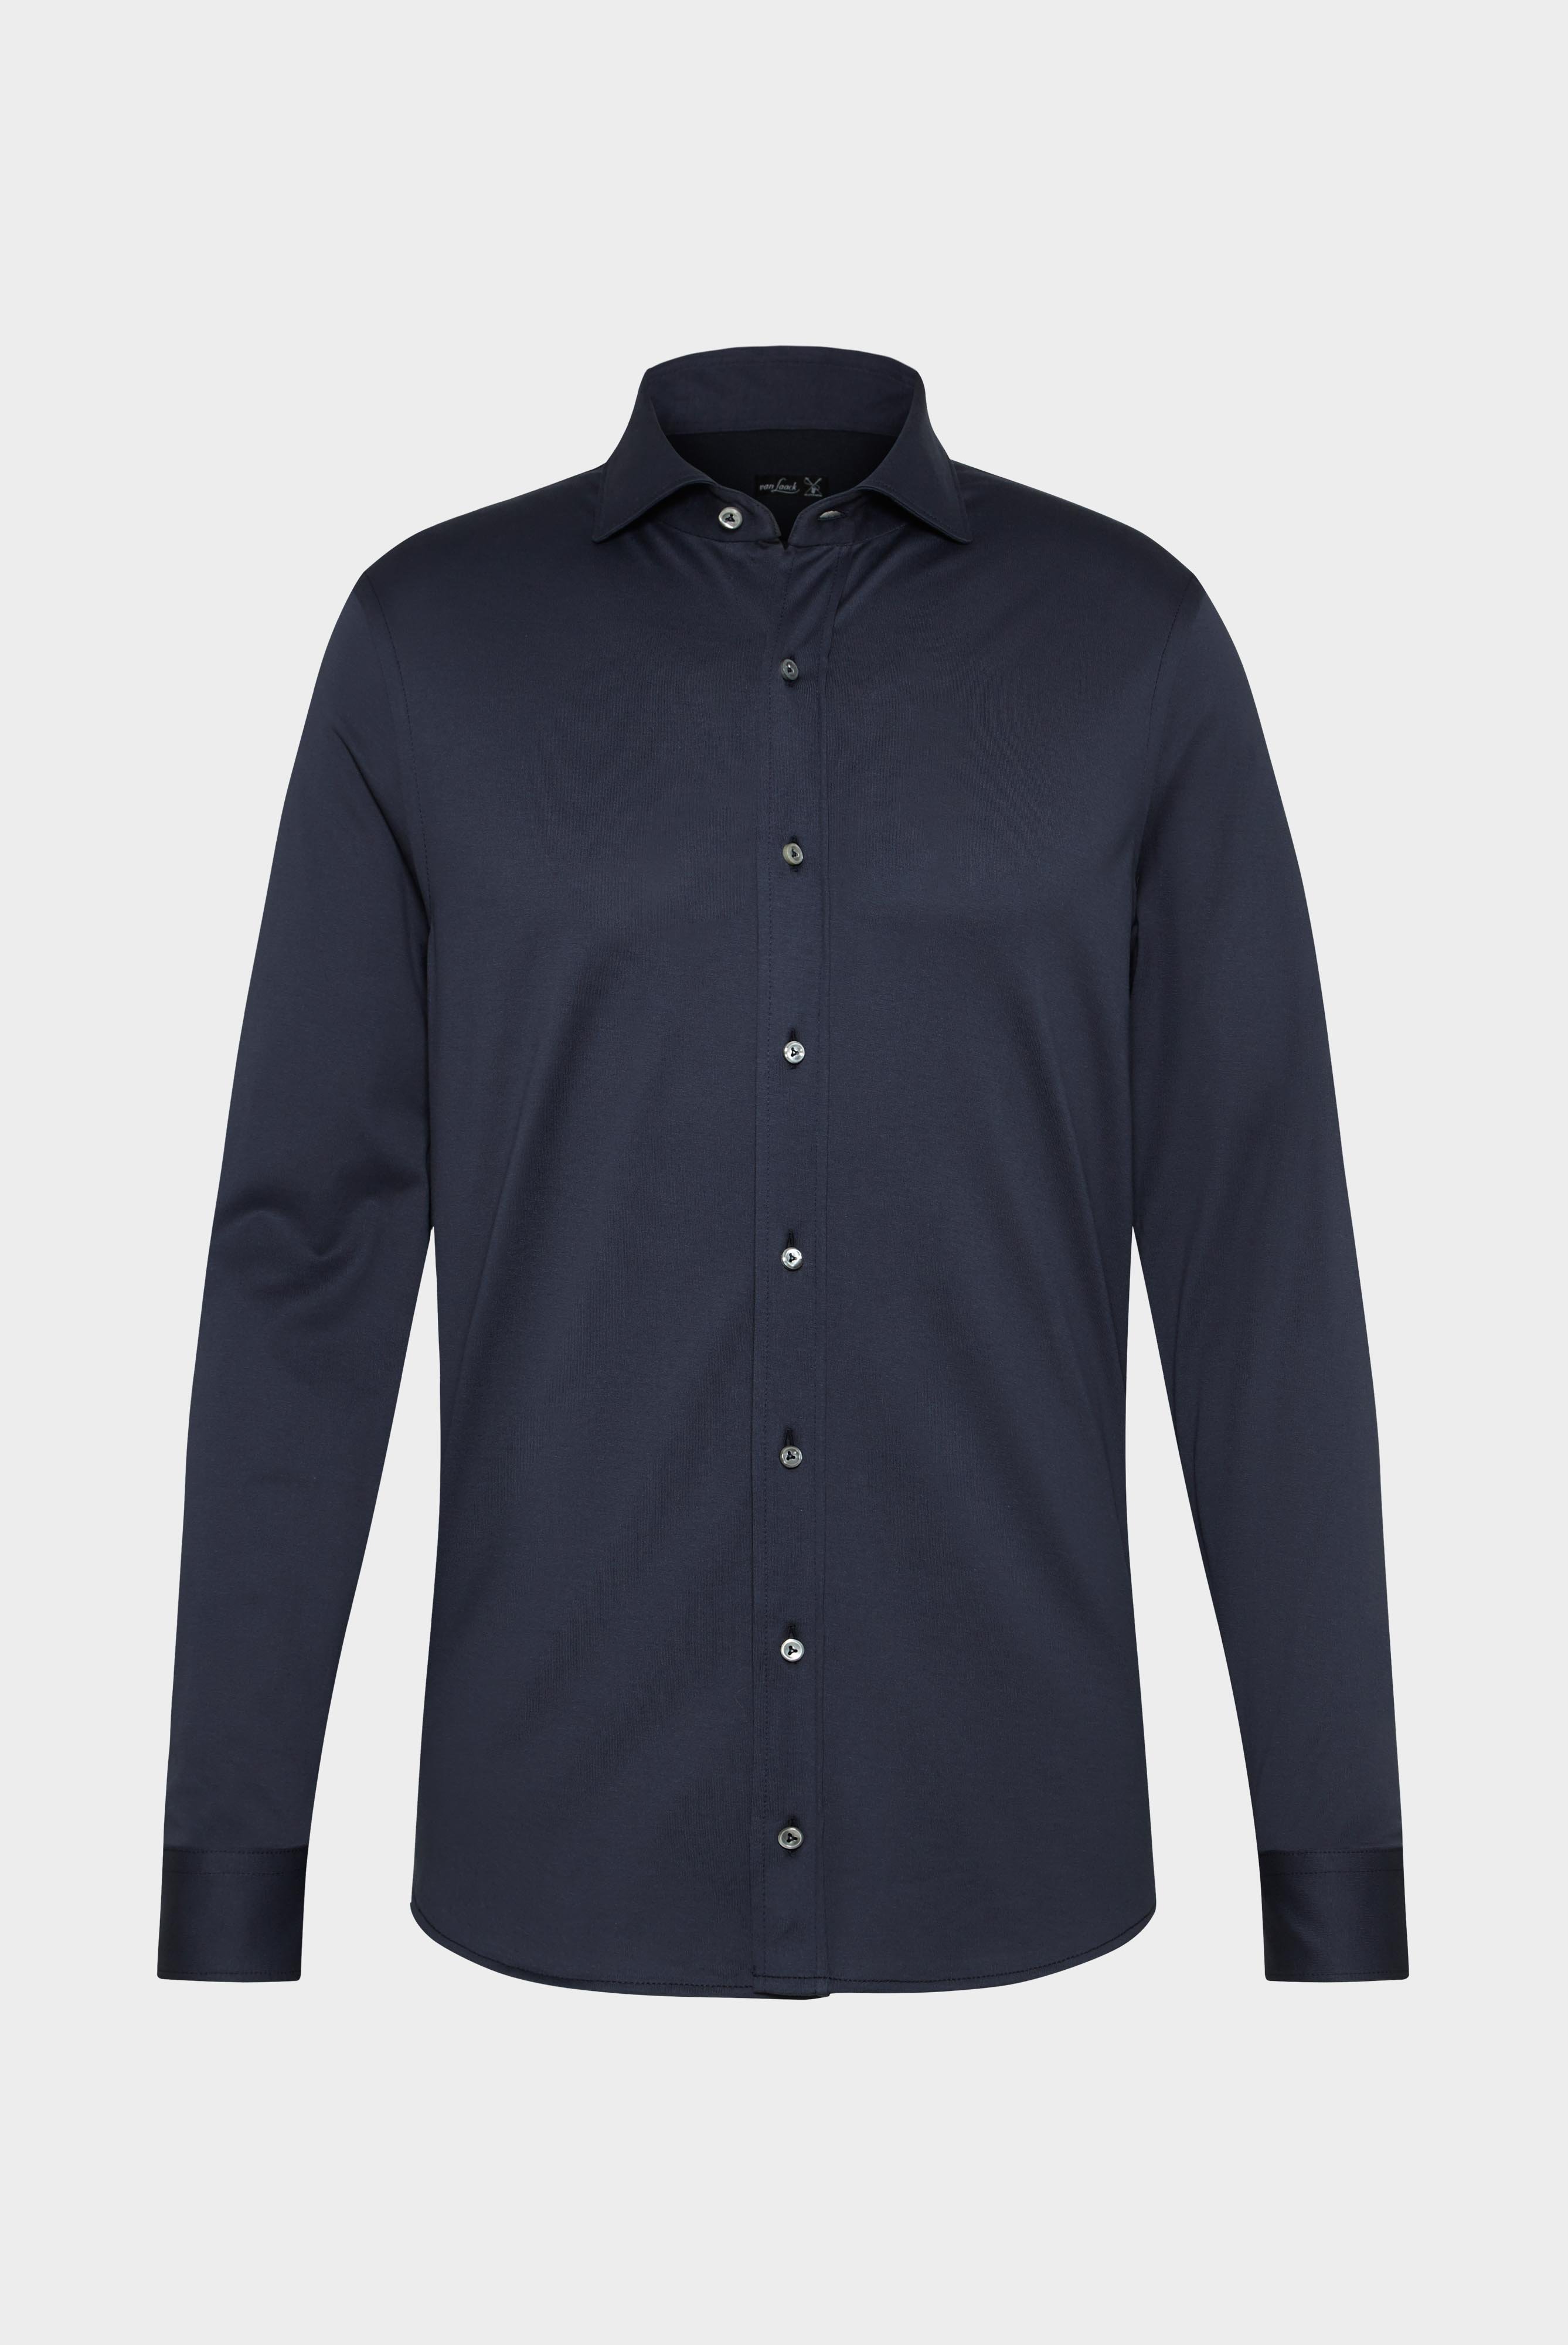 Jersey Hemden+Jersey Shirt Urban Look Slim Fit+20.1651.UC.Z20044.790.L